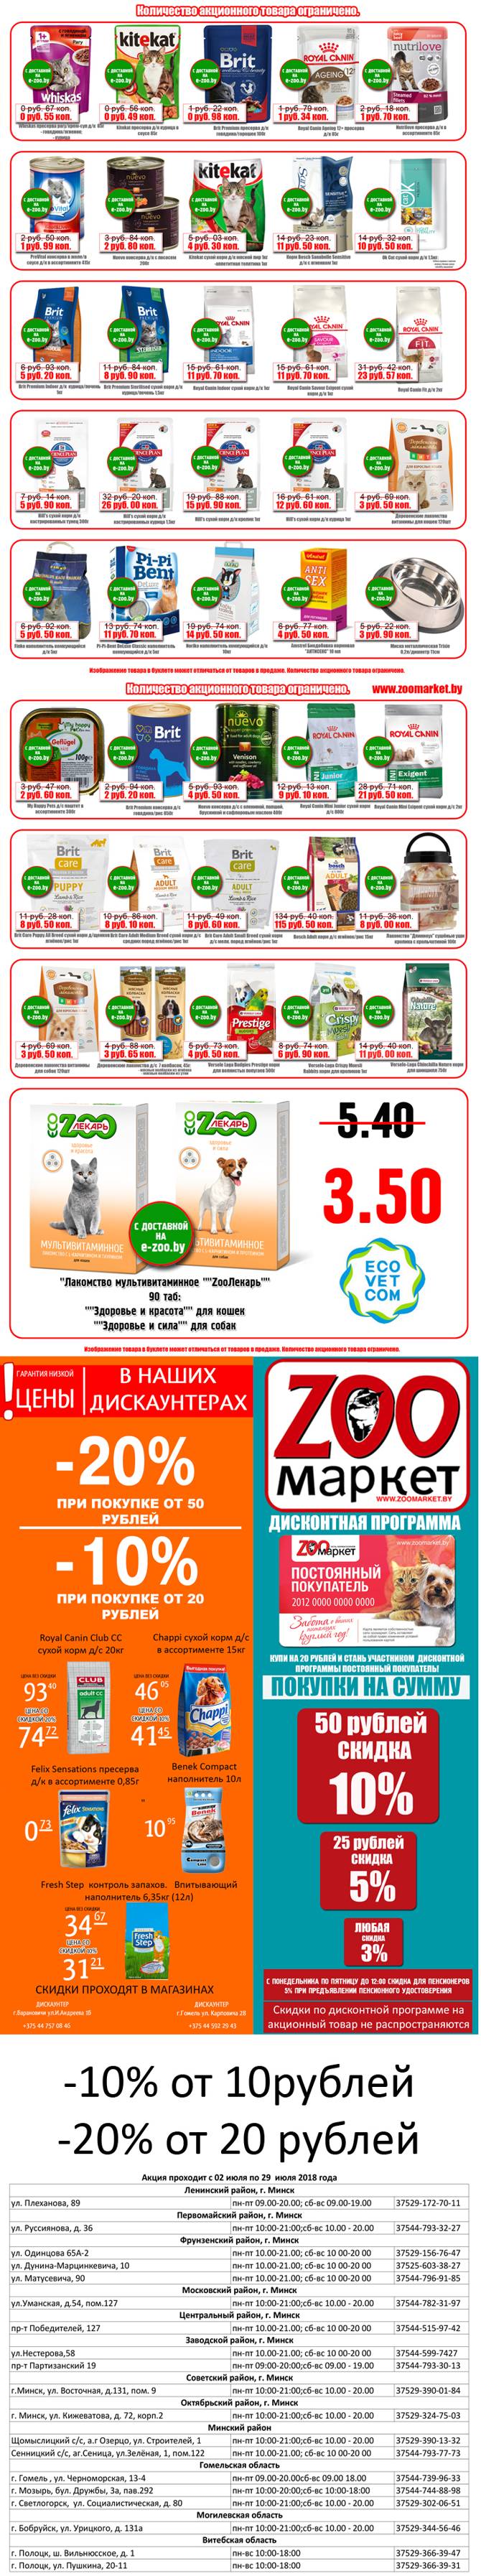 zoomarket 0207 2